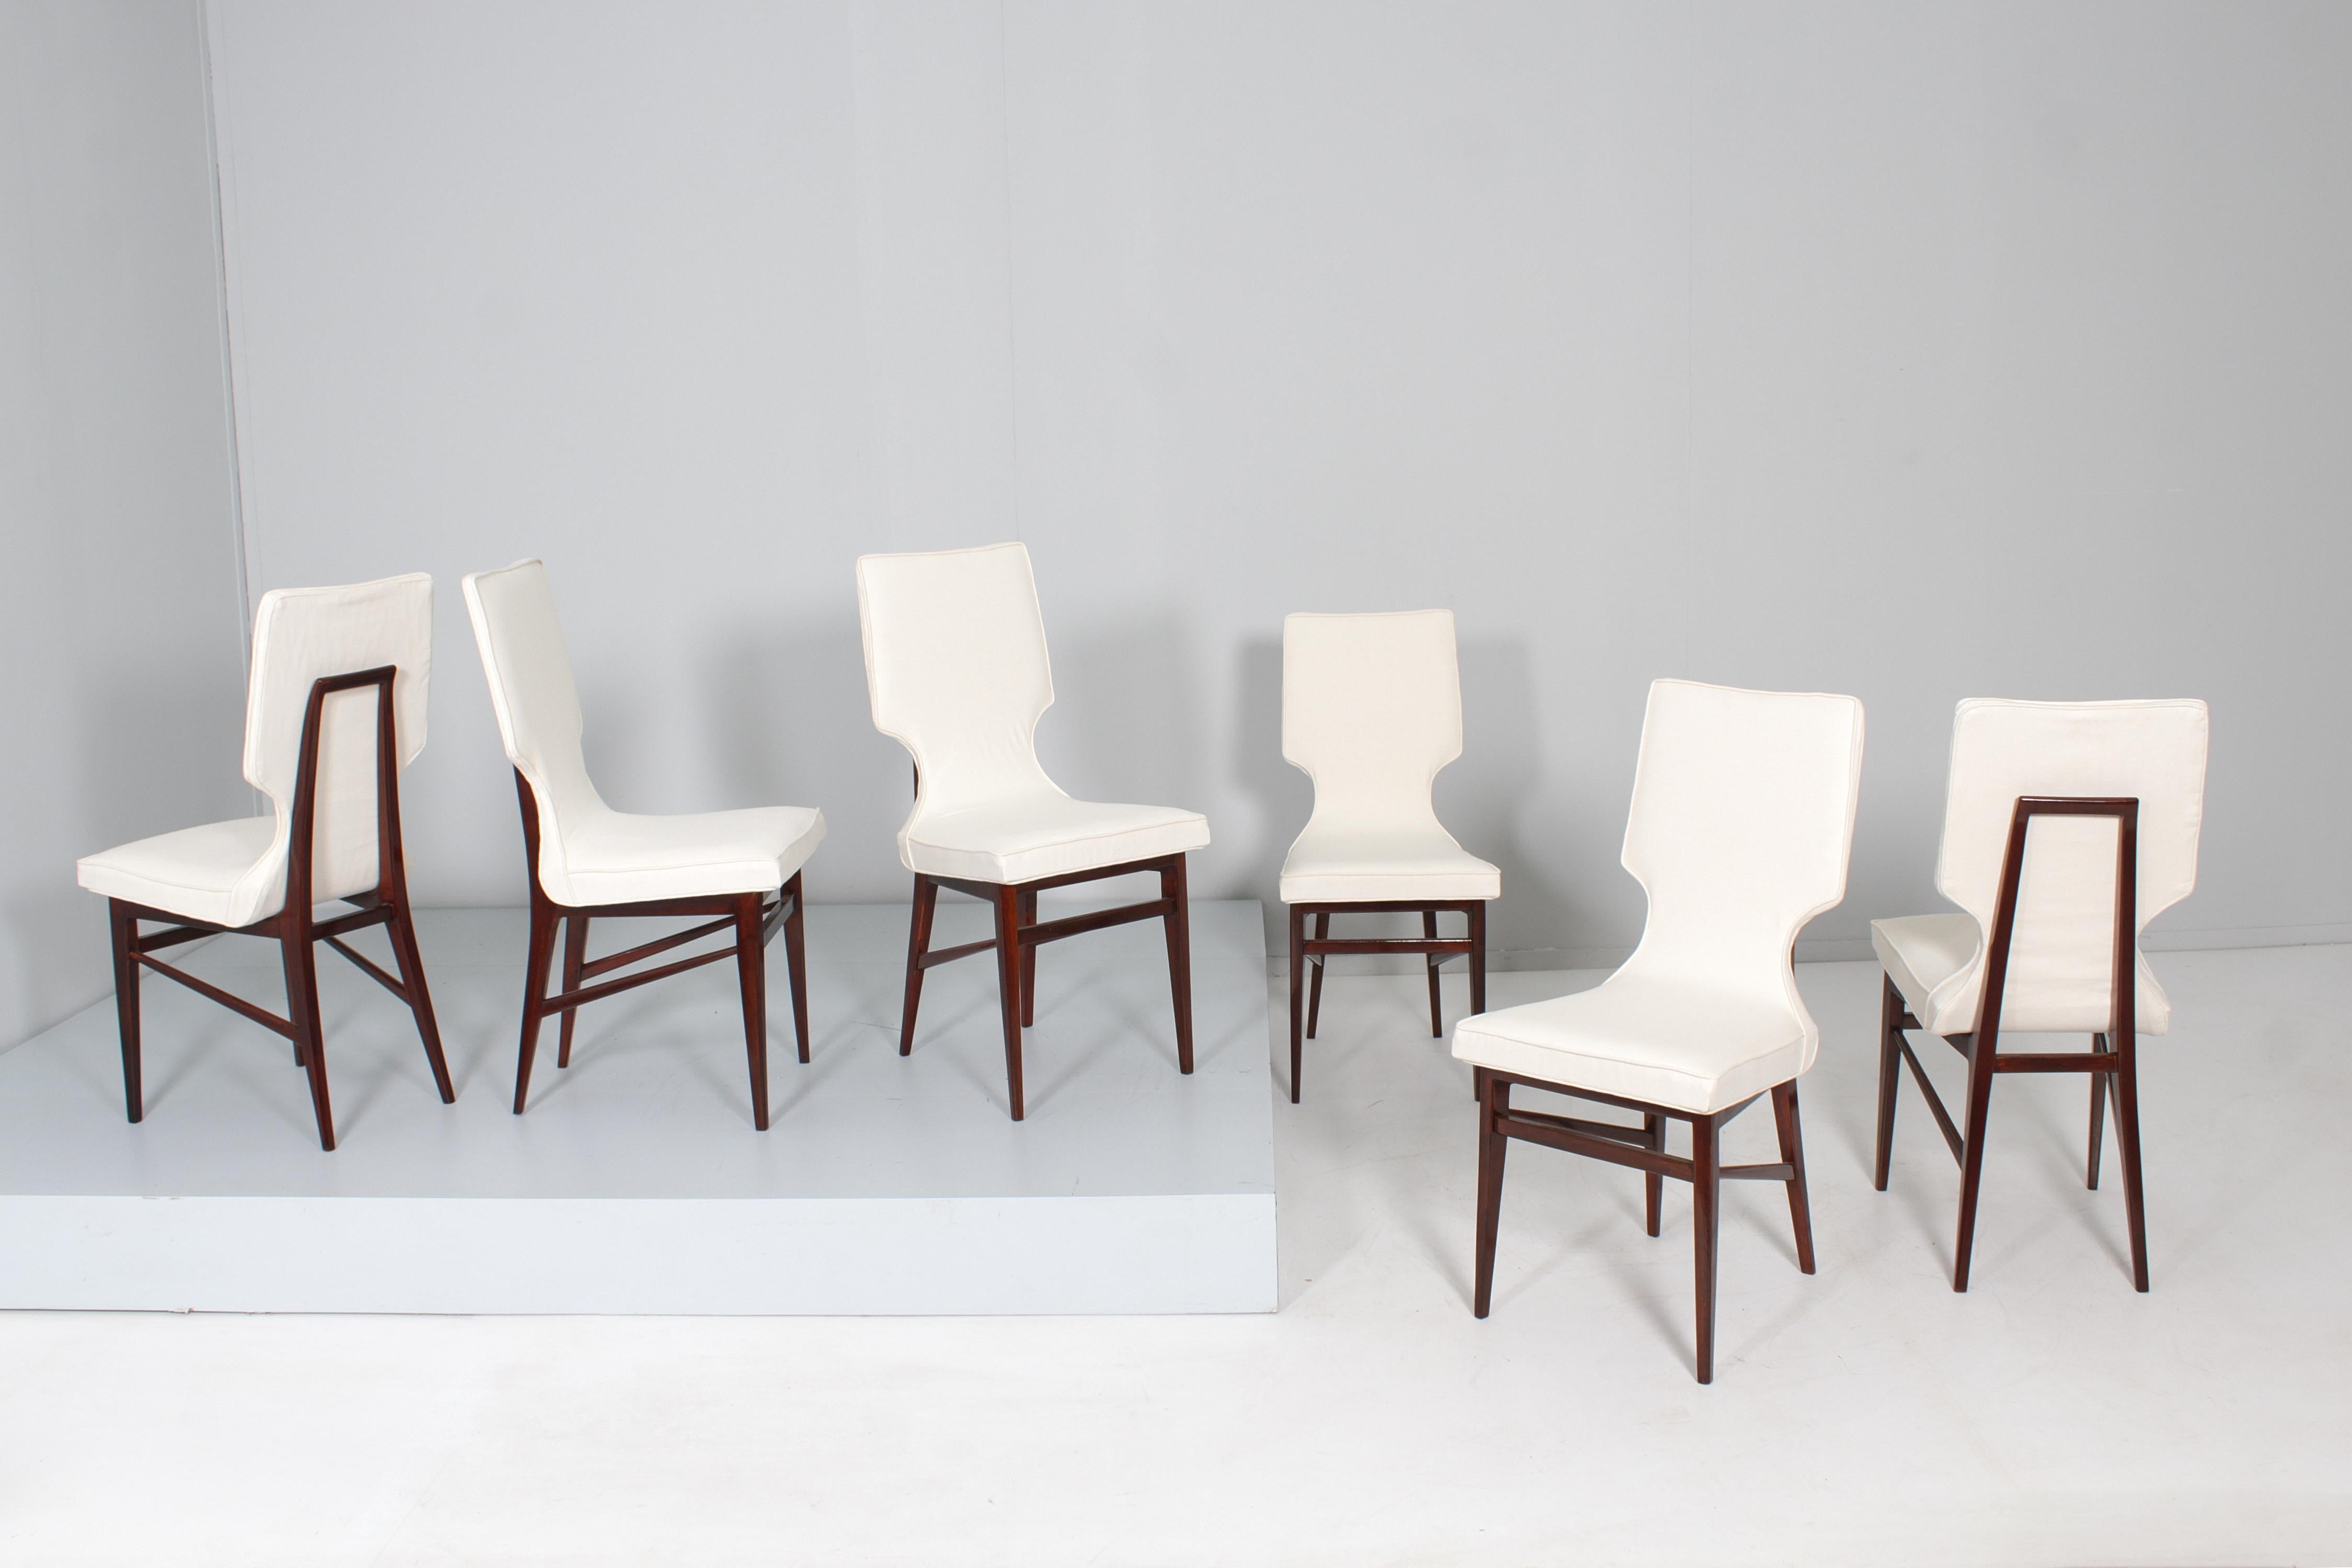 Merveilleux ensemble de six chaises restaurées au design harmonieux et géométrique avec une structure en bois façonnée et courbée et un rembourrage en tissu blanc précieux, attribuable à Ico Parisi, fabriquées à Cantù, Italie, dans les années 1960.
